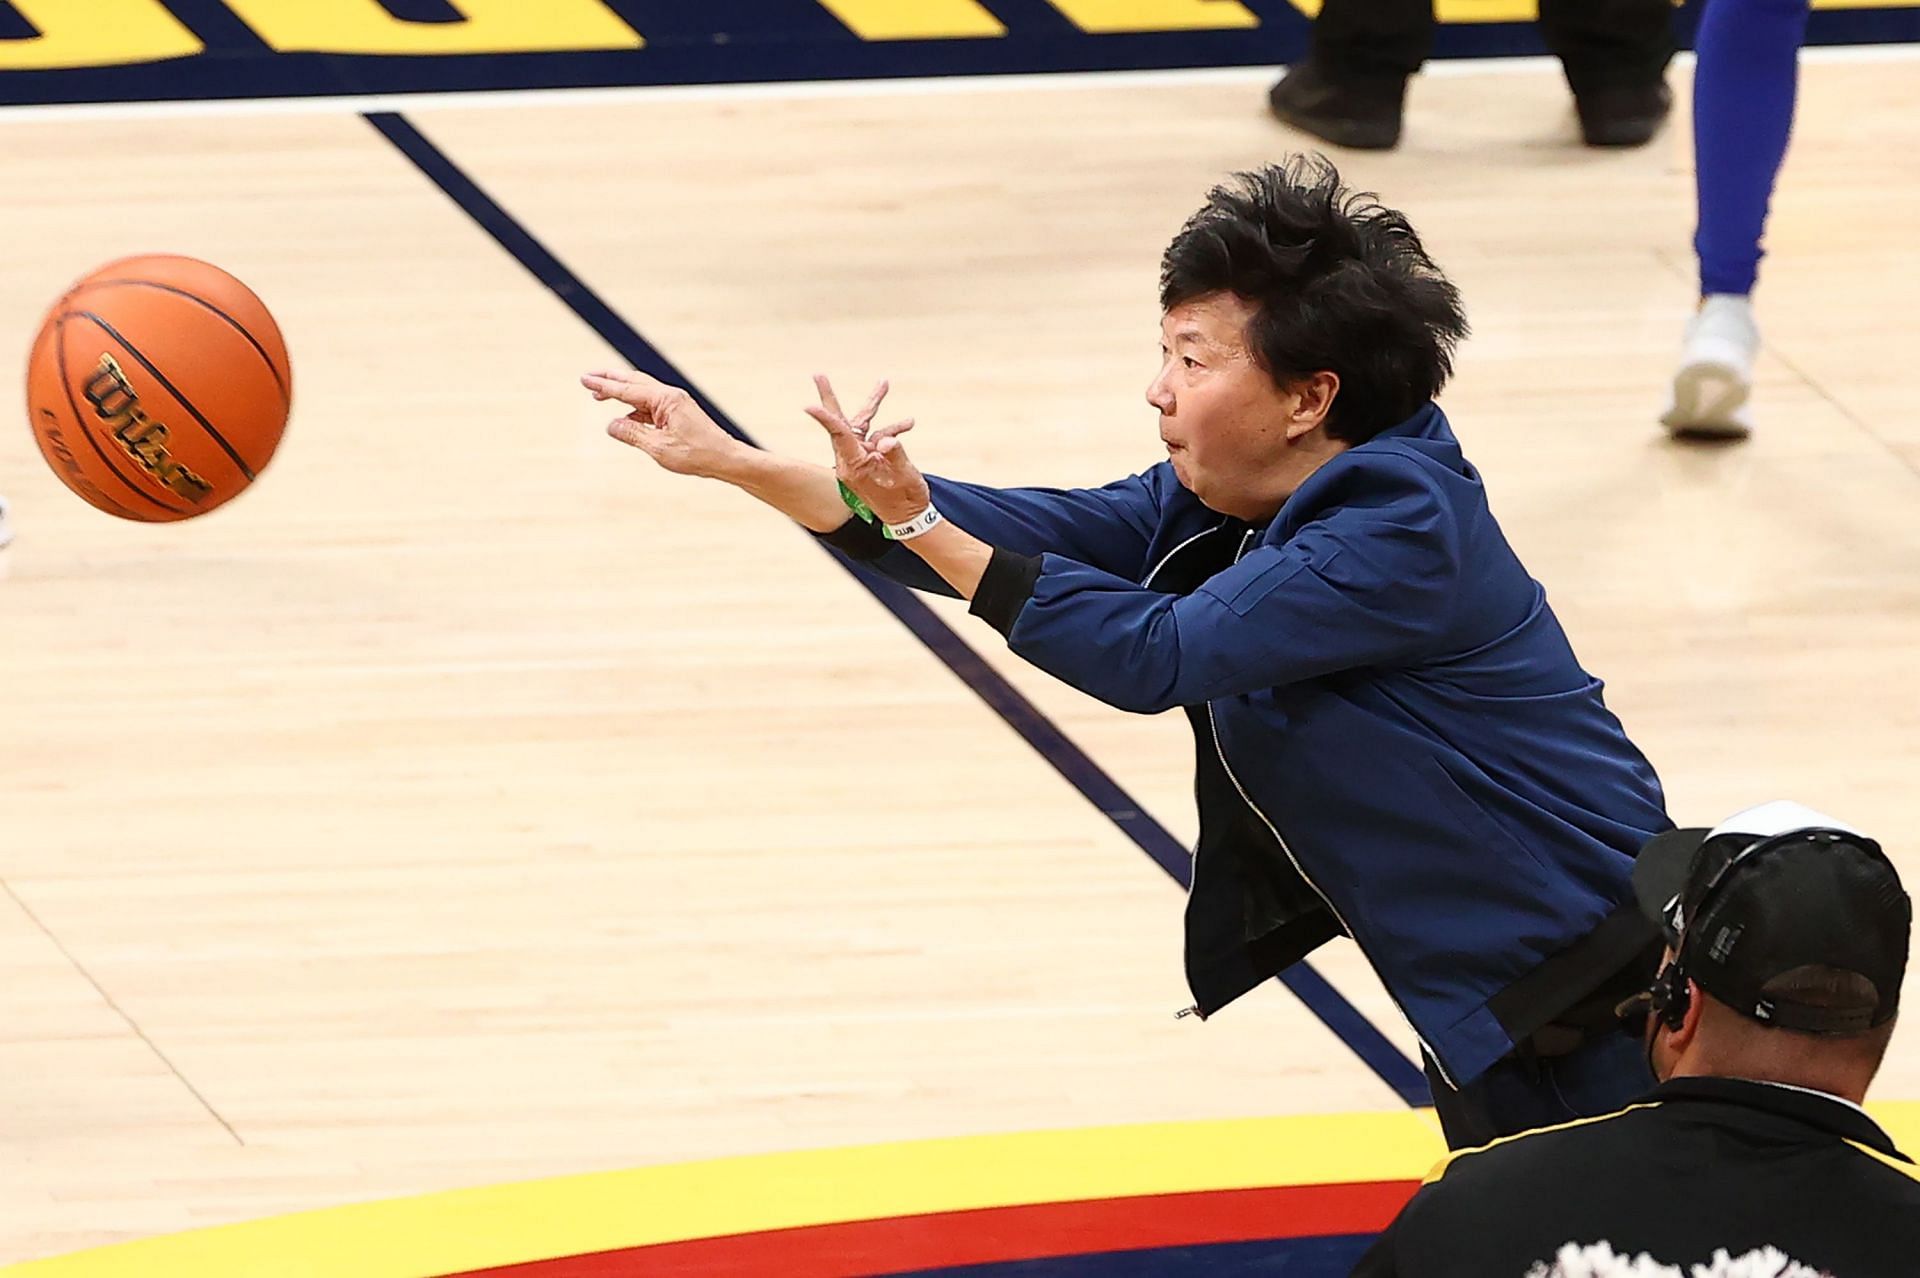 Ken Jeong at the 2023 NBA Finals - Game 1